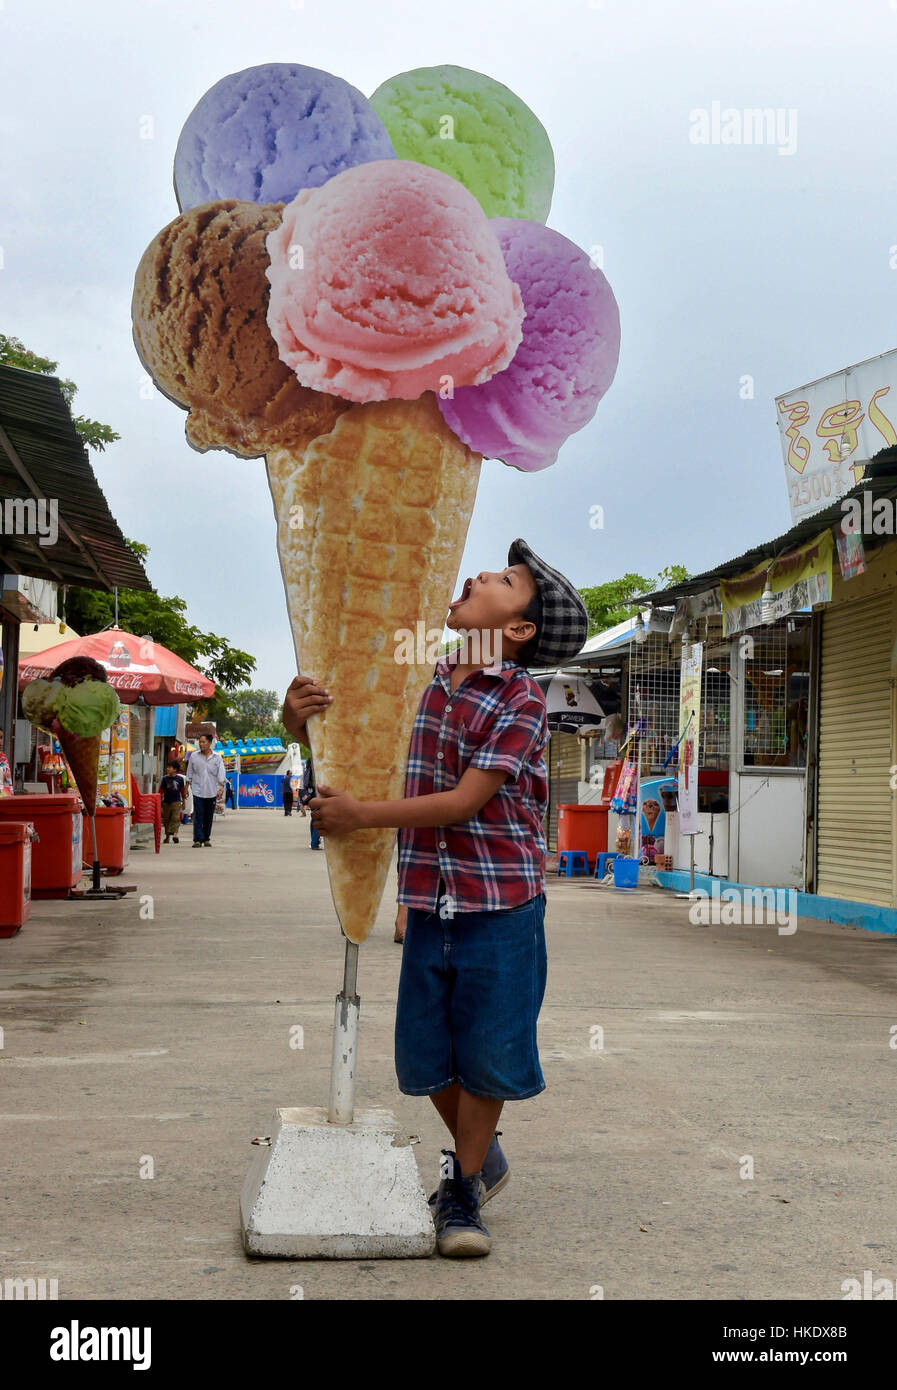 Garçon avec un cornet de crème glacée en carton, Province Phnom Penh, Cambodge Banque D'Images